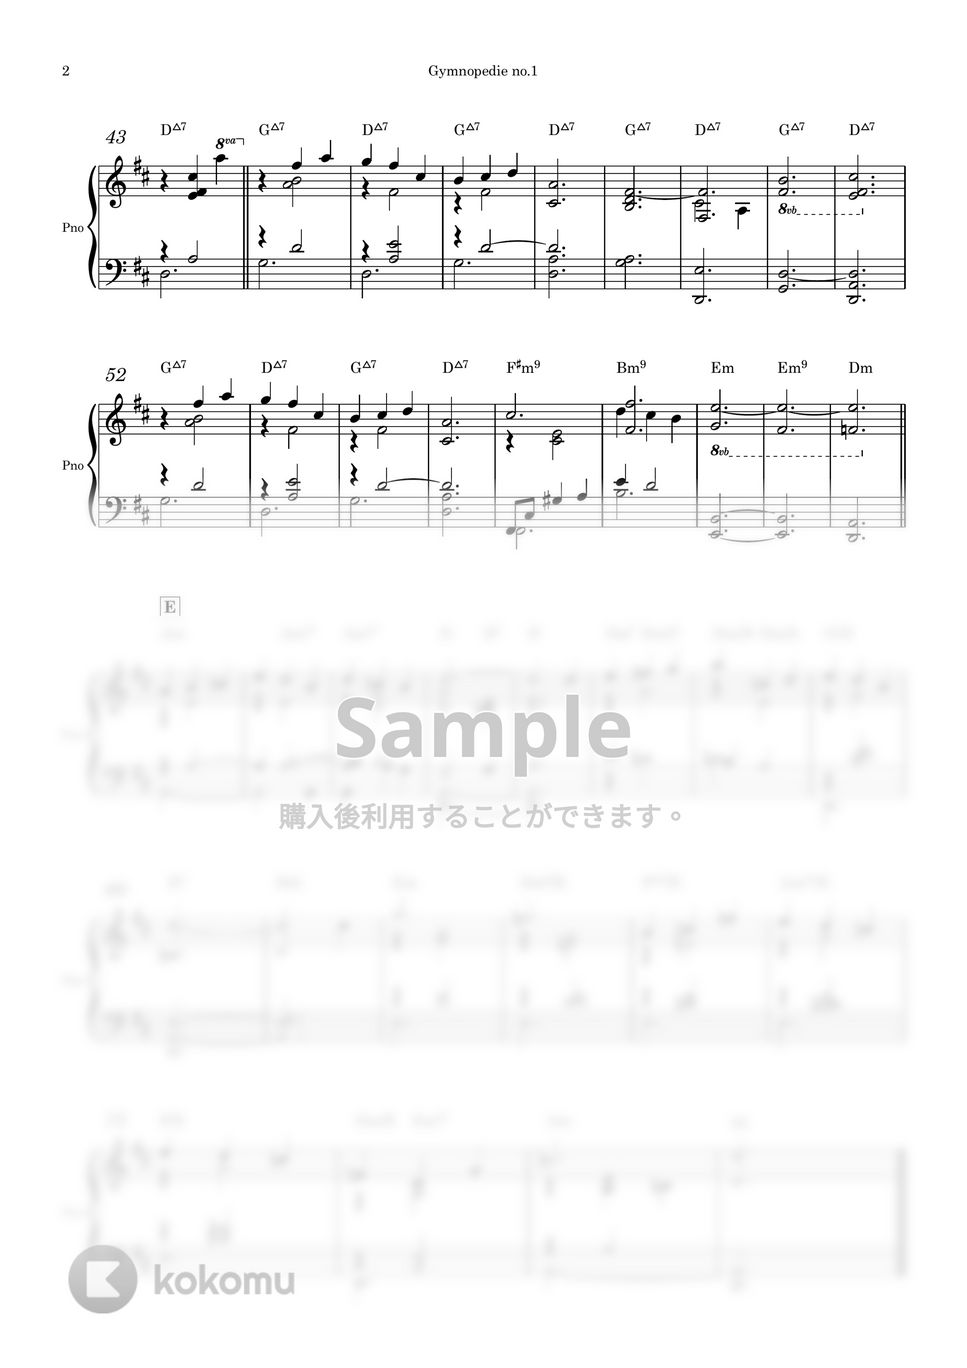 Erik Satie - Gymnopedie 1 (ピアノソロ) by Piano QQQ